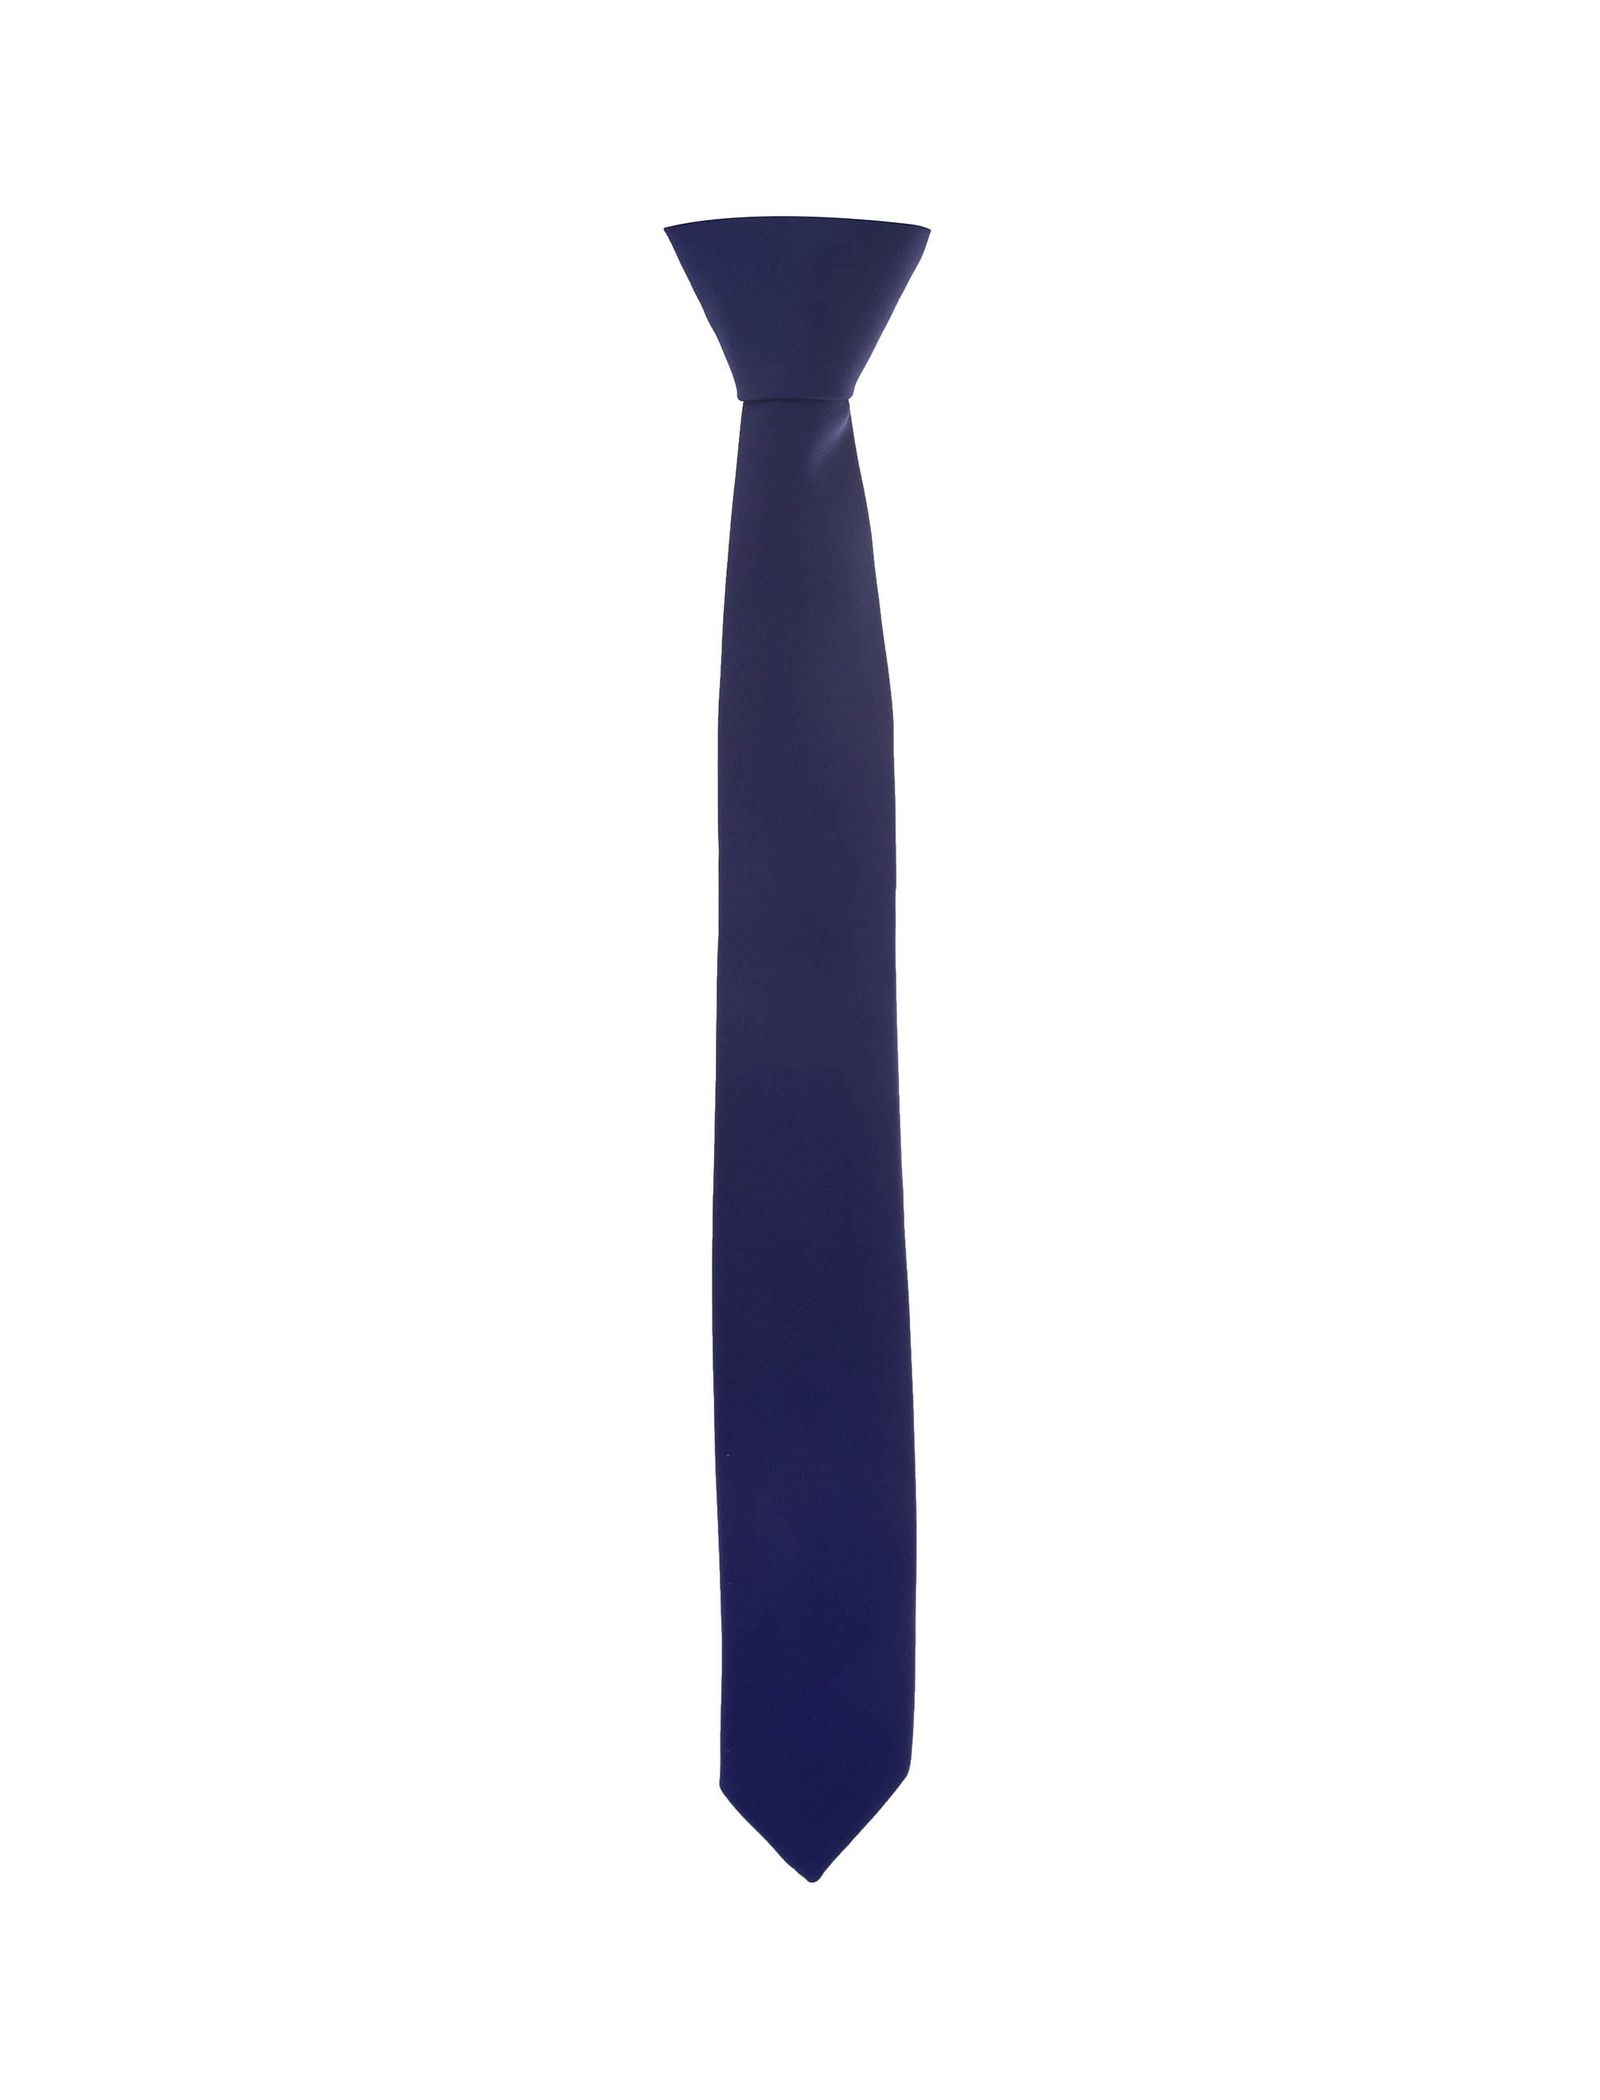 کراوات پاترون مدل 1723112 تک سایز - آبي - 1